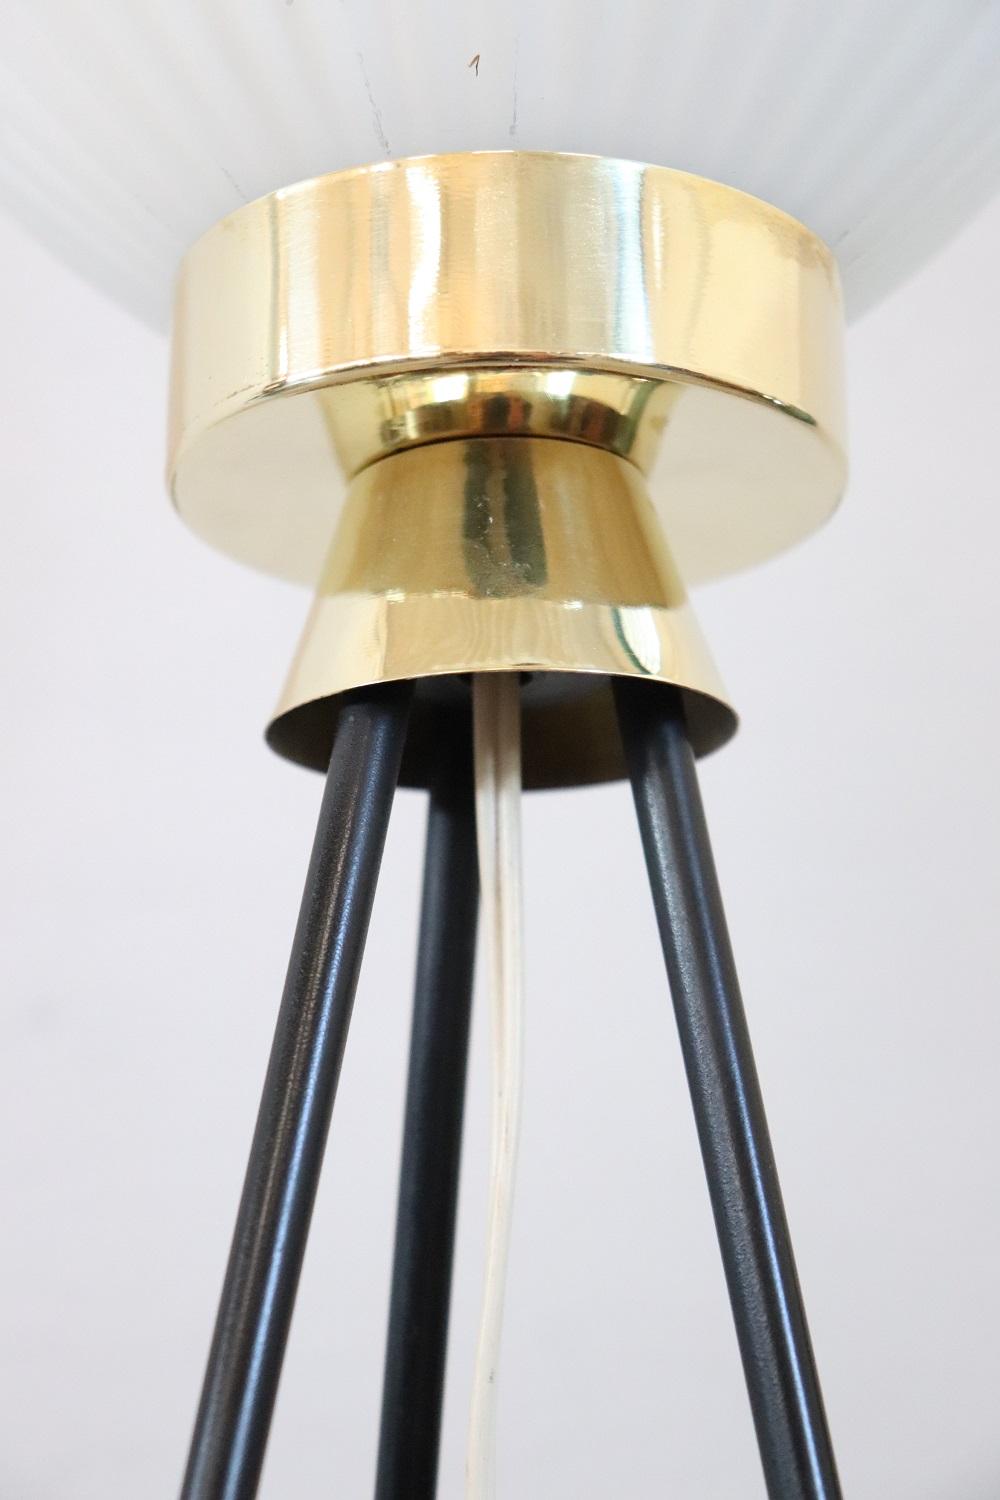 Italian Design Opaline Glass and Brass Stilnovo Style Floor Lamp, 1950s For Sale 5